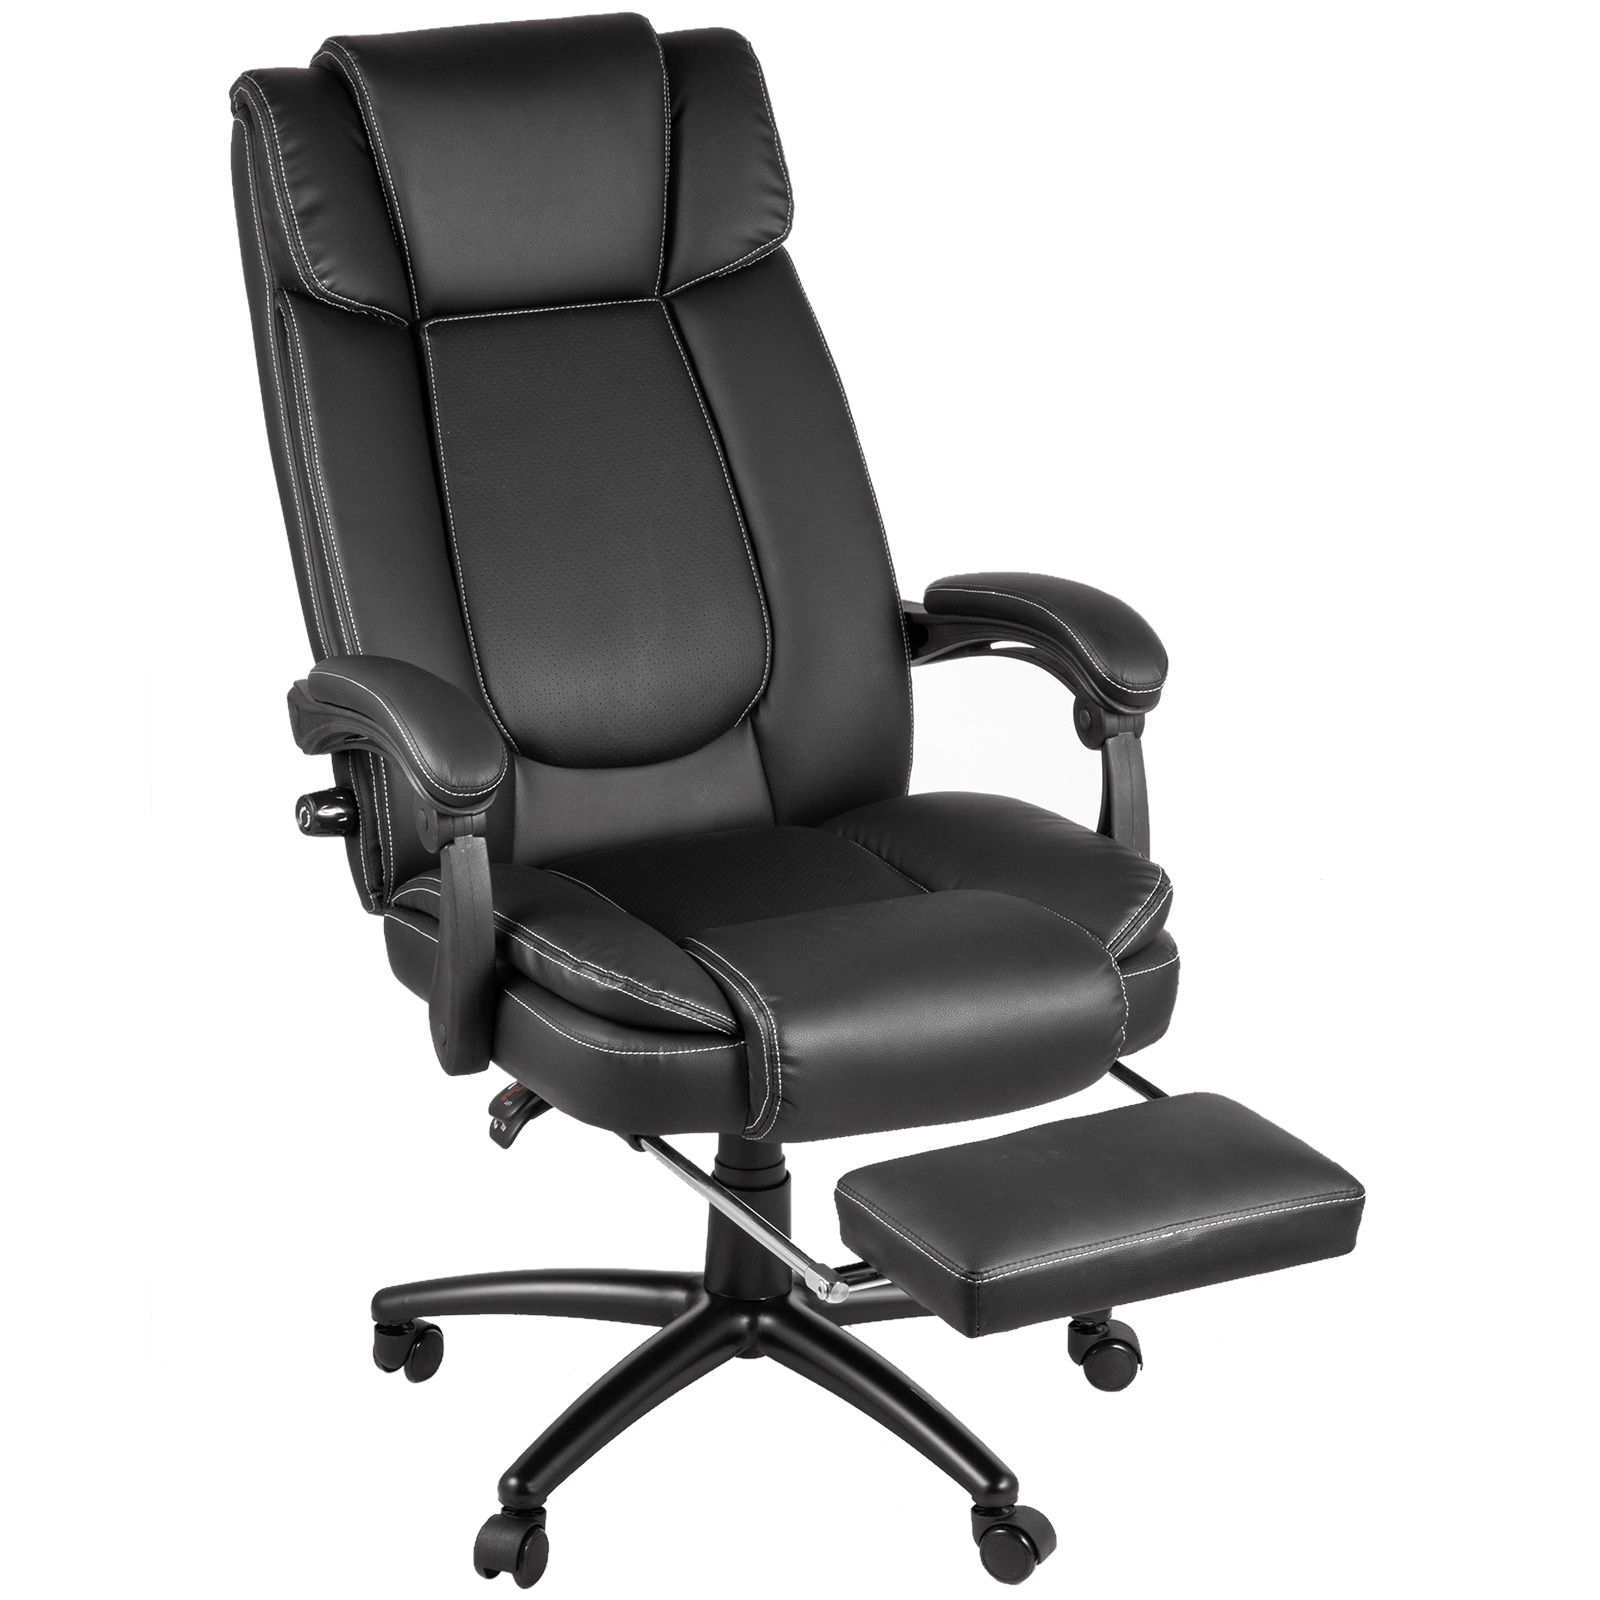 Executive Chair M100 11 ?22144